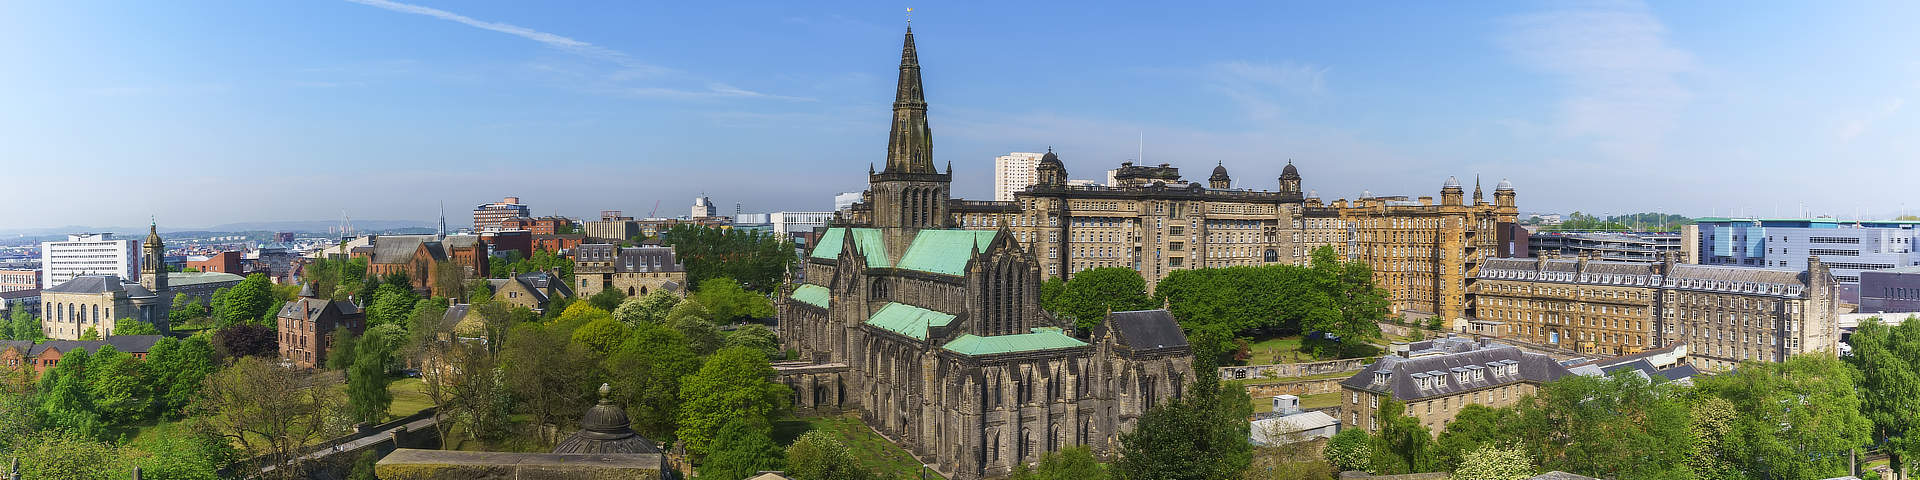 Kathedraal van Glasgow